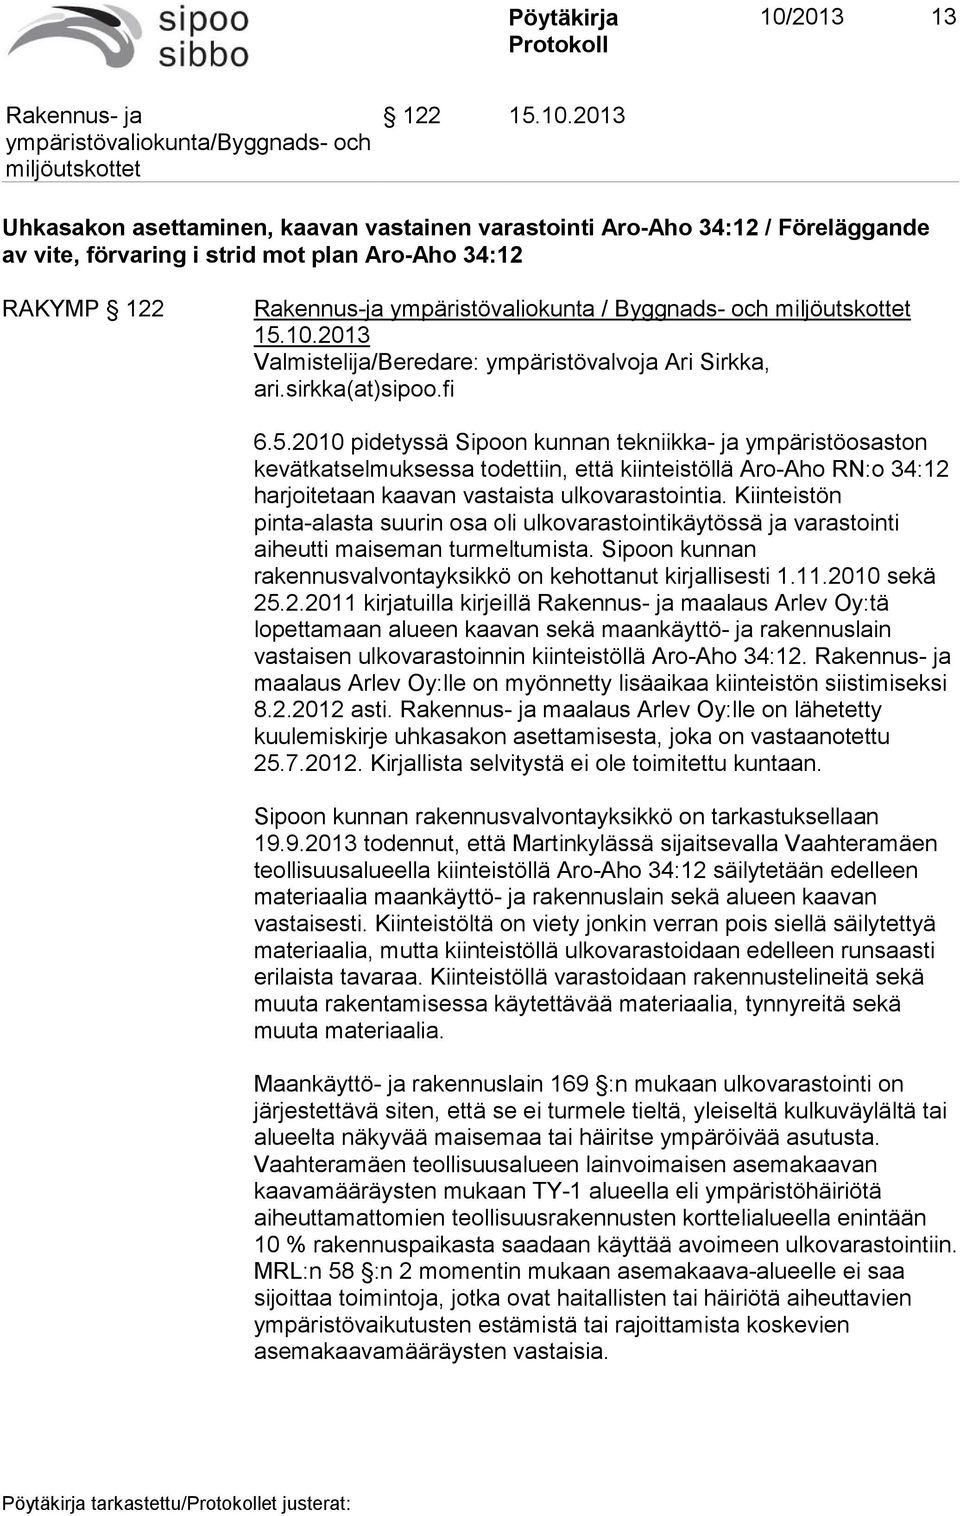 2010 pidetyssä Sipoon kunnan tekniikka- ja ympäristöosaston kevätkatselmuksessa todettiin, että kiinteistöllä Aro-Aho RN:o 34:12 harjoitetaan kaavan vastaista ulkovarastointia.